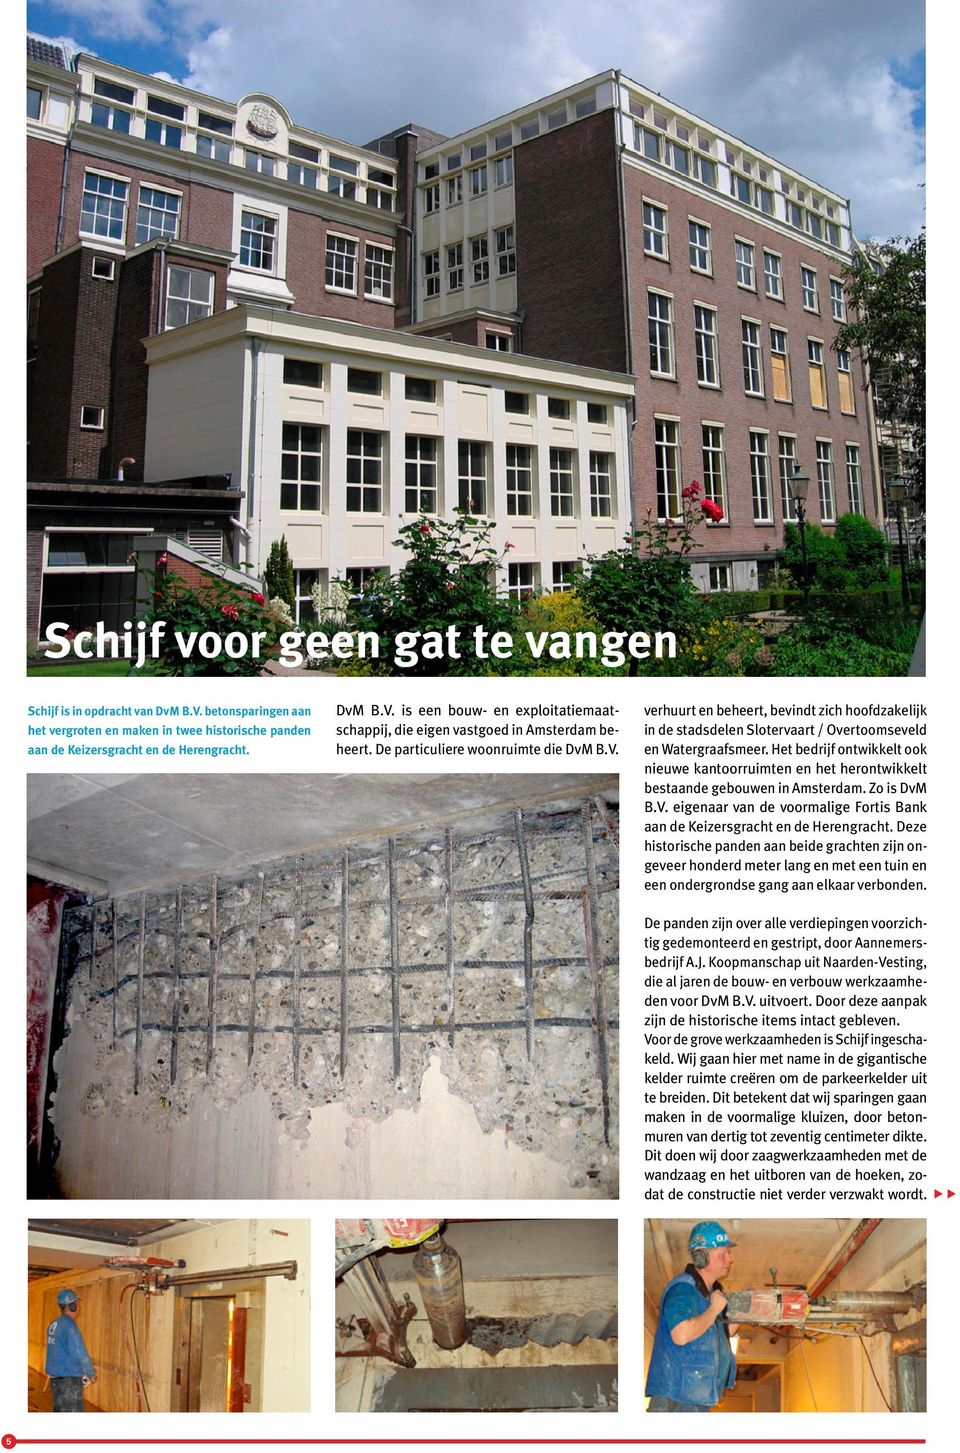 Het bedrijf ontwikkelt ook nieuwe kantoorruimten en het herontwikkelt bestaande gebouwen in Amsterdam. Zo is DvM B.V. eigenaar van de voormalige Fortis Bank aan de Keizersgracht en de Herengracht.